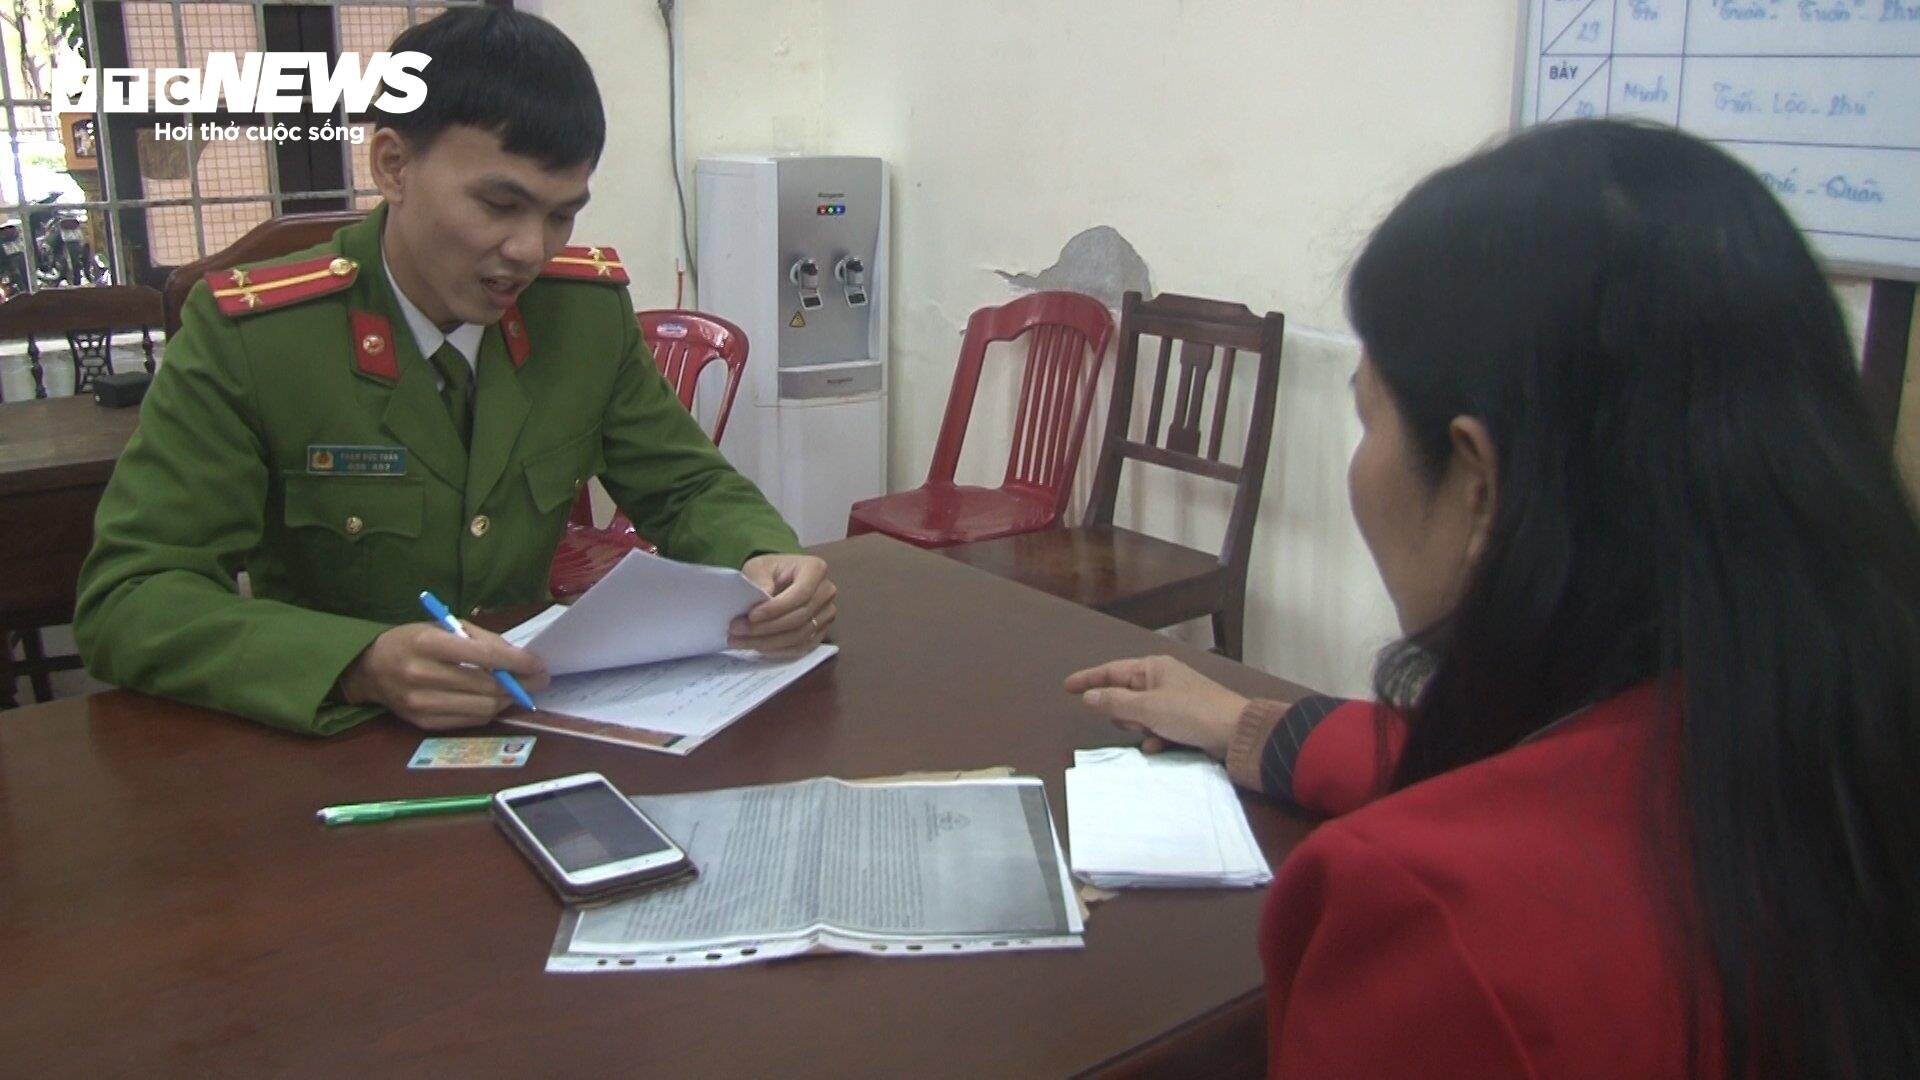 Chị Phan Thị M. đến công an trình báo về việc bản thân bị những kẻ lấy danh nghĩa luật sư lừa đảo. (Ảnh: CACC)